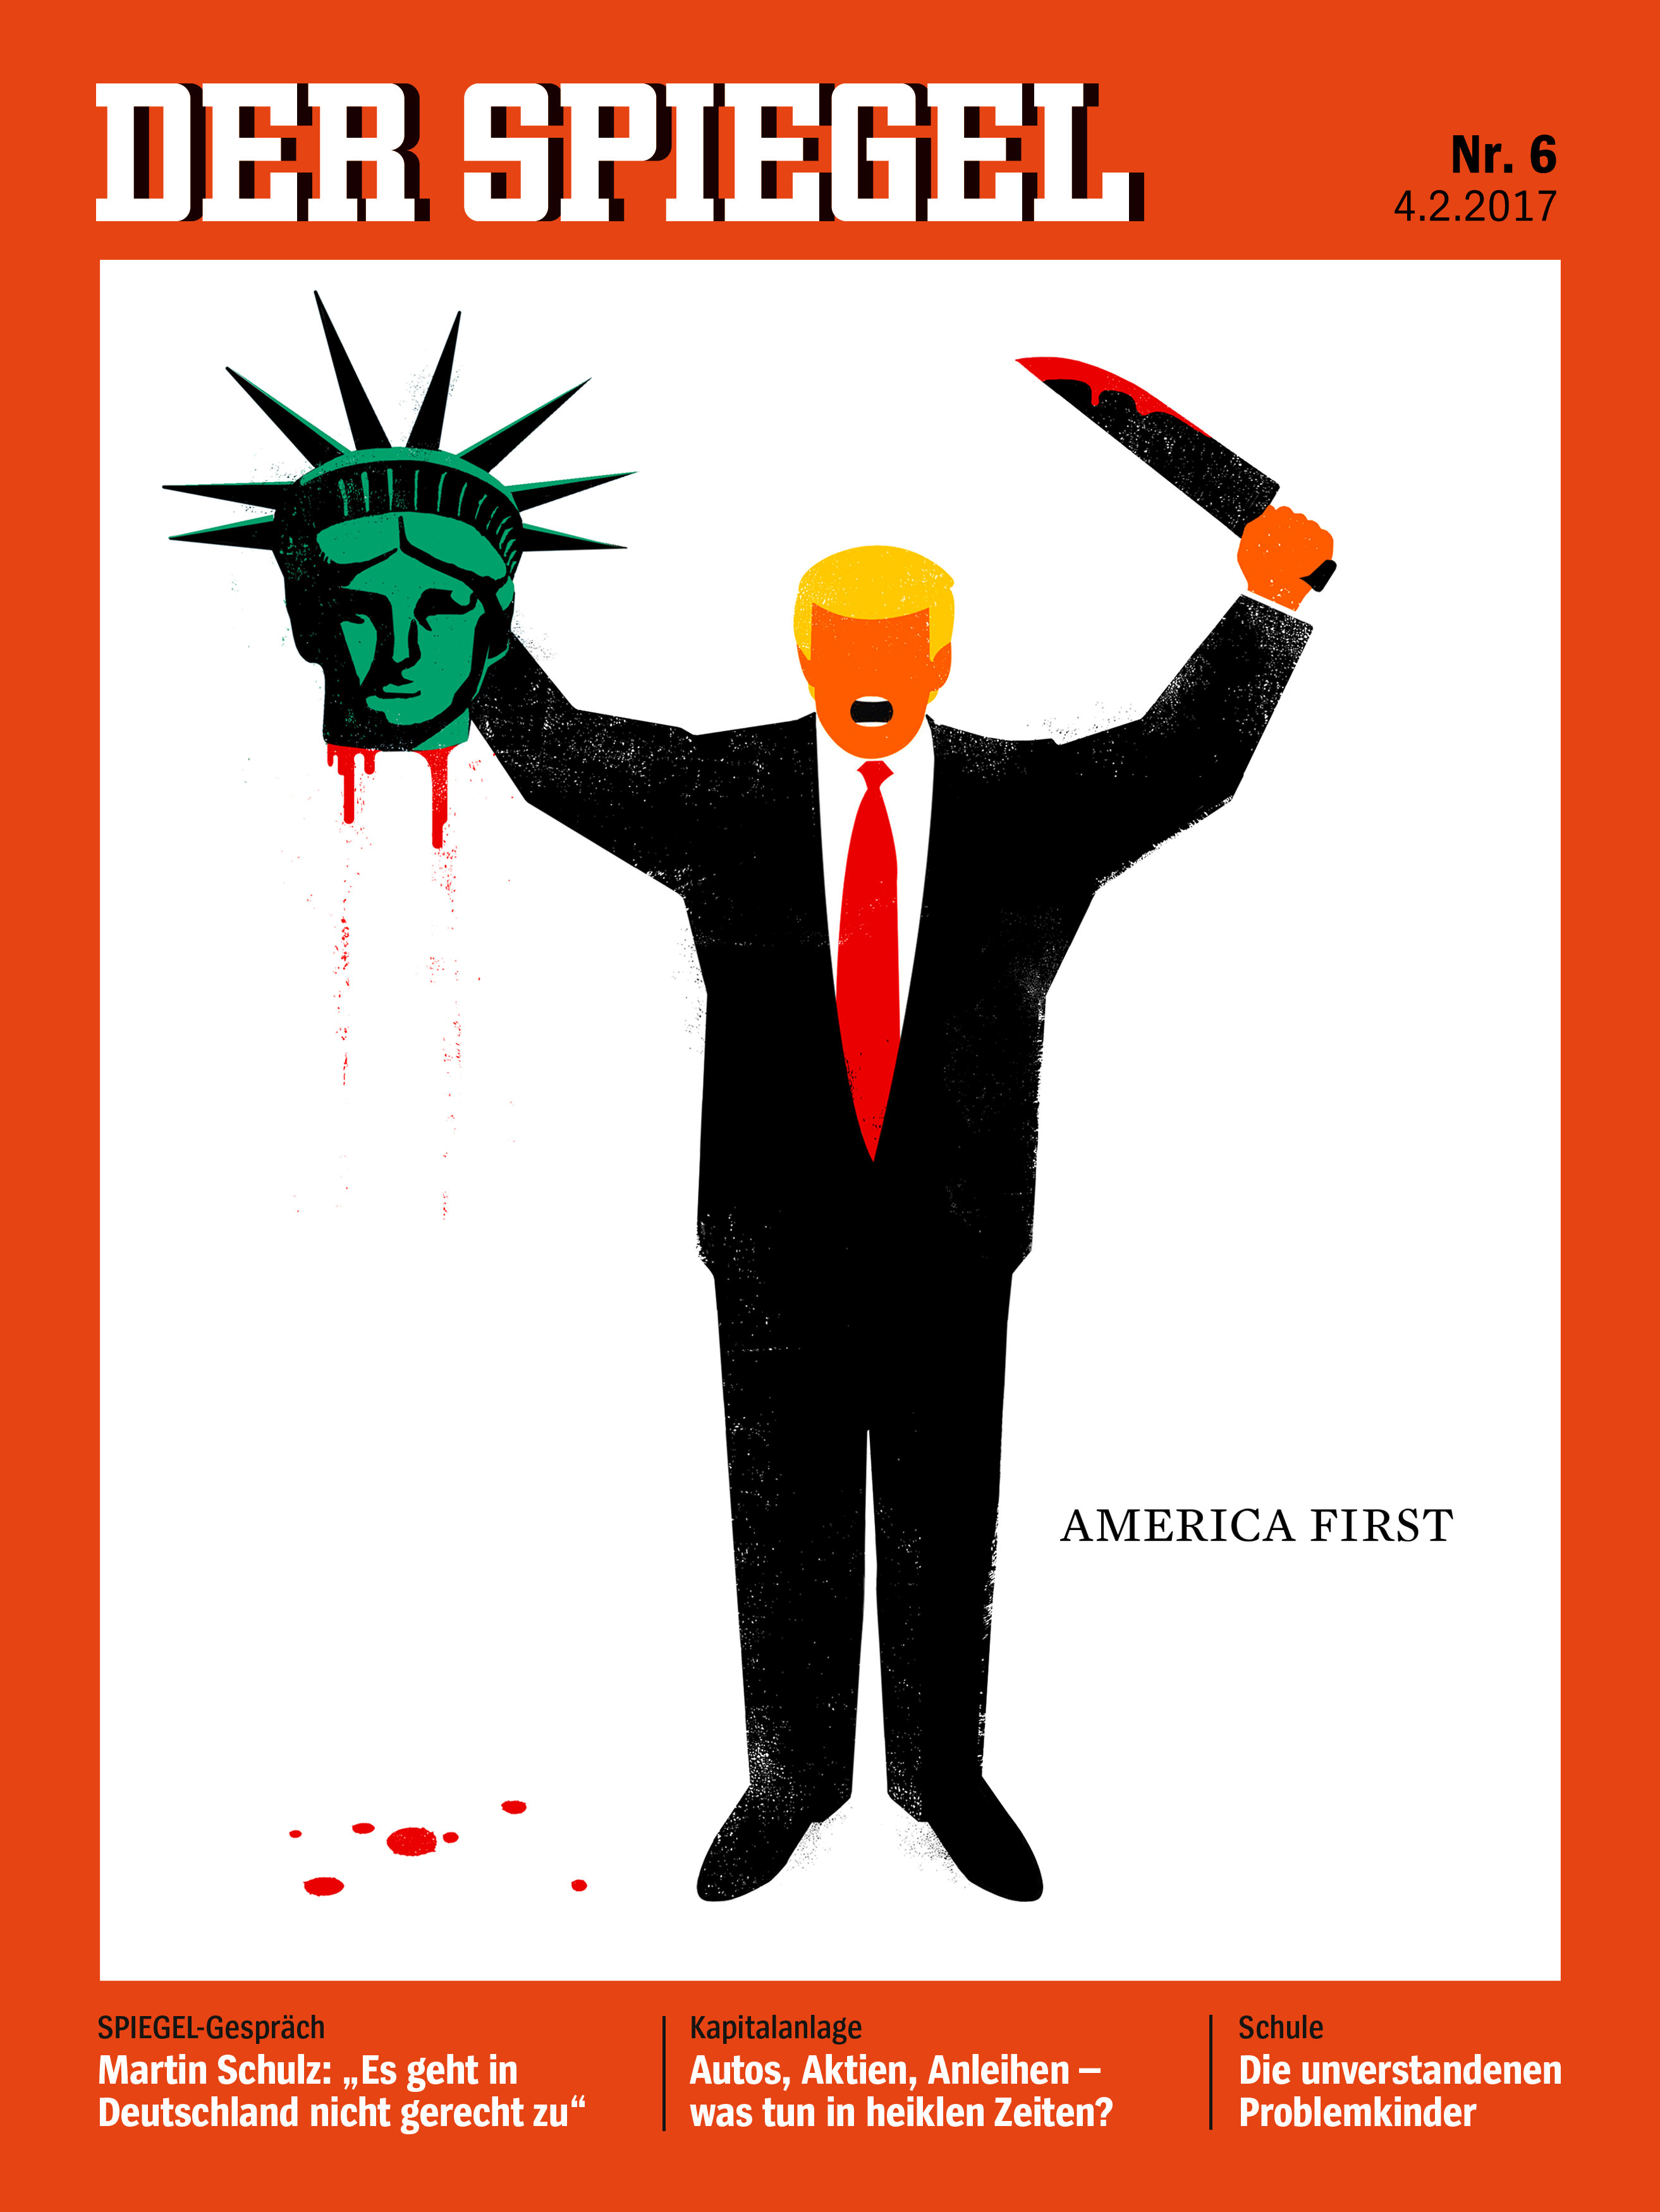 دونالد ترامب على غلاف مجلة "دير شبيجل" الألمانية